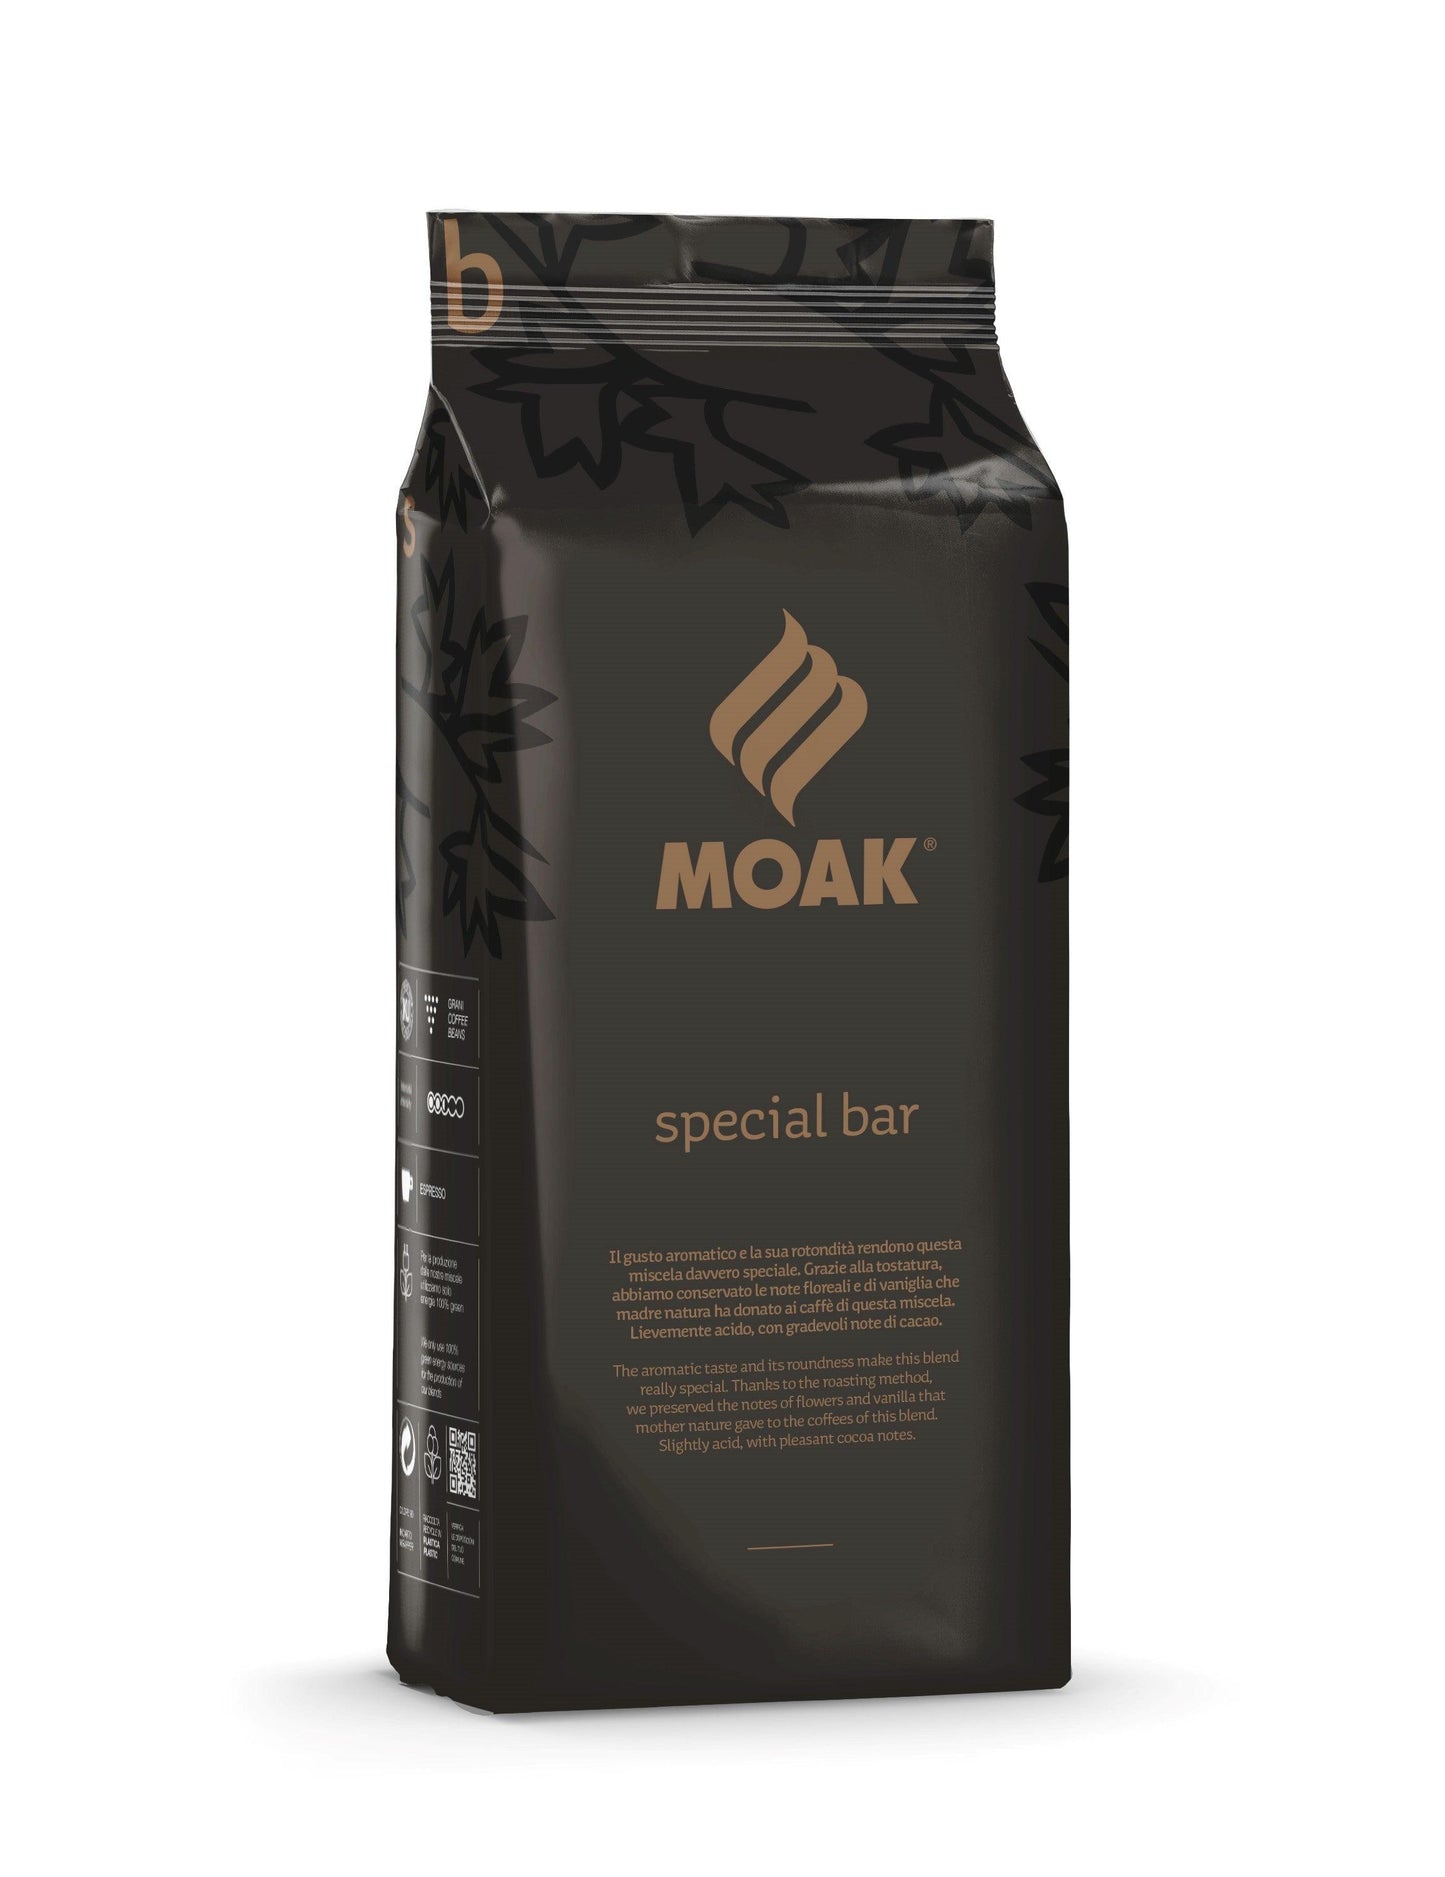 Moak Special Bar x 1 Kg - Moak International Distributors Malta